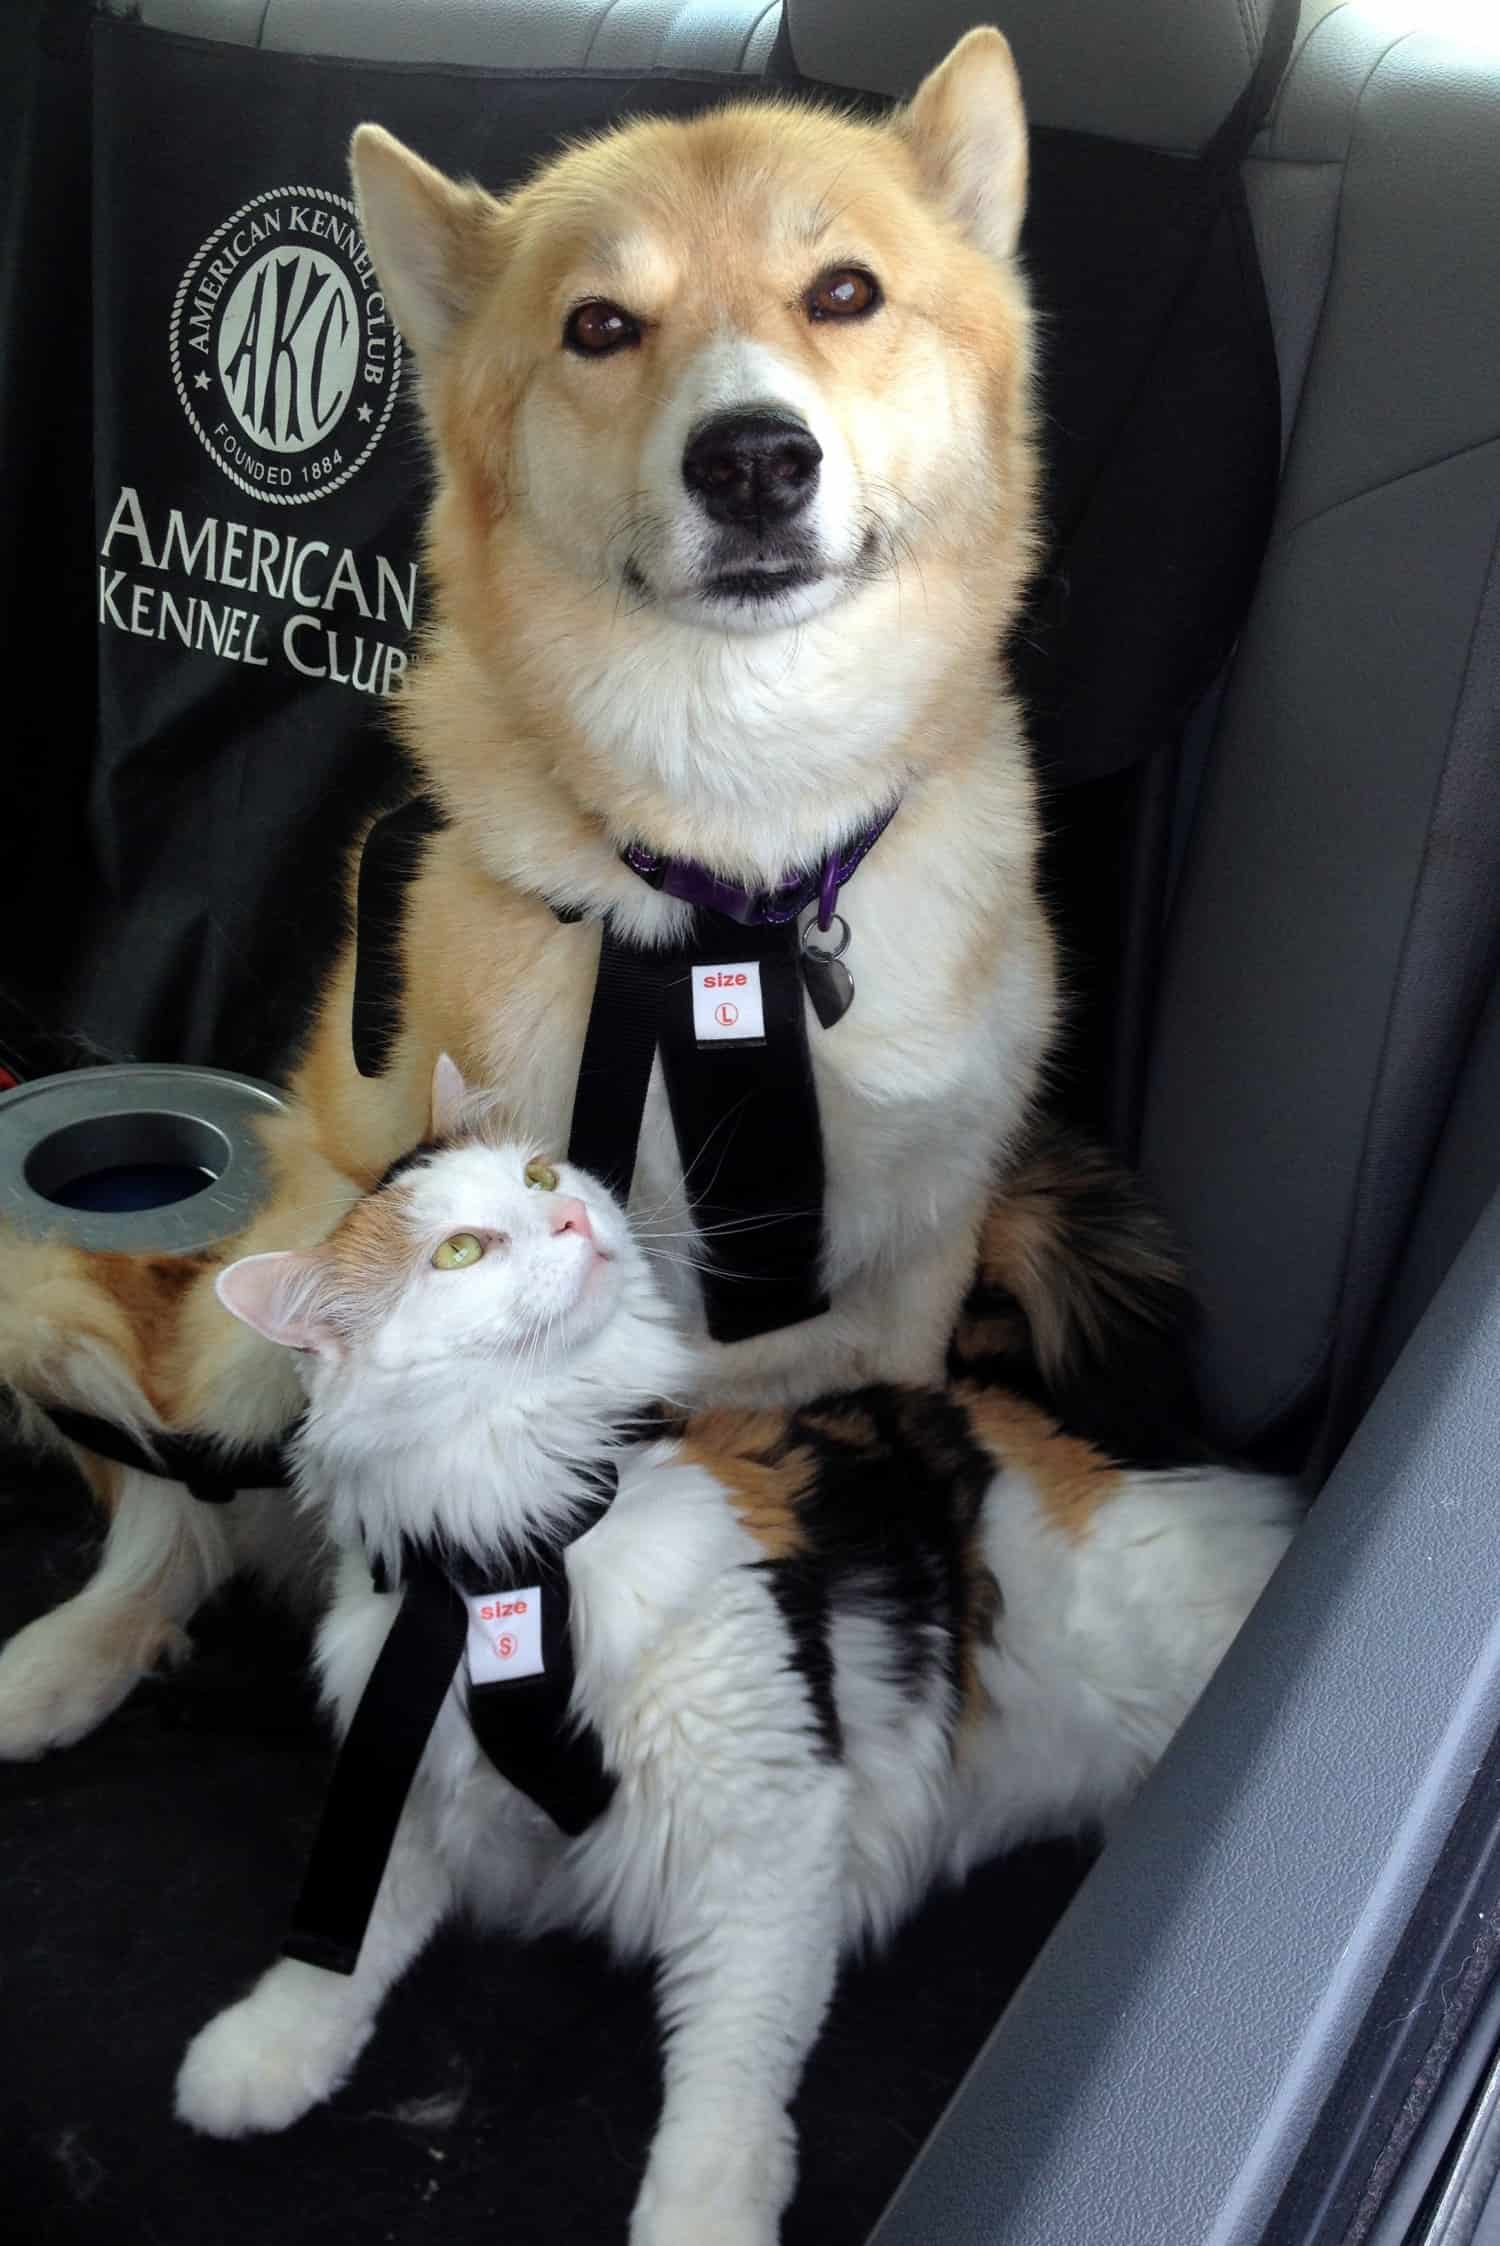 Een harnas is een andere manier om katten veilig in de auto te houden.  Kat en hond in harnassen op de achterbank.